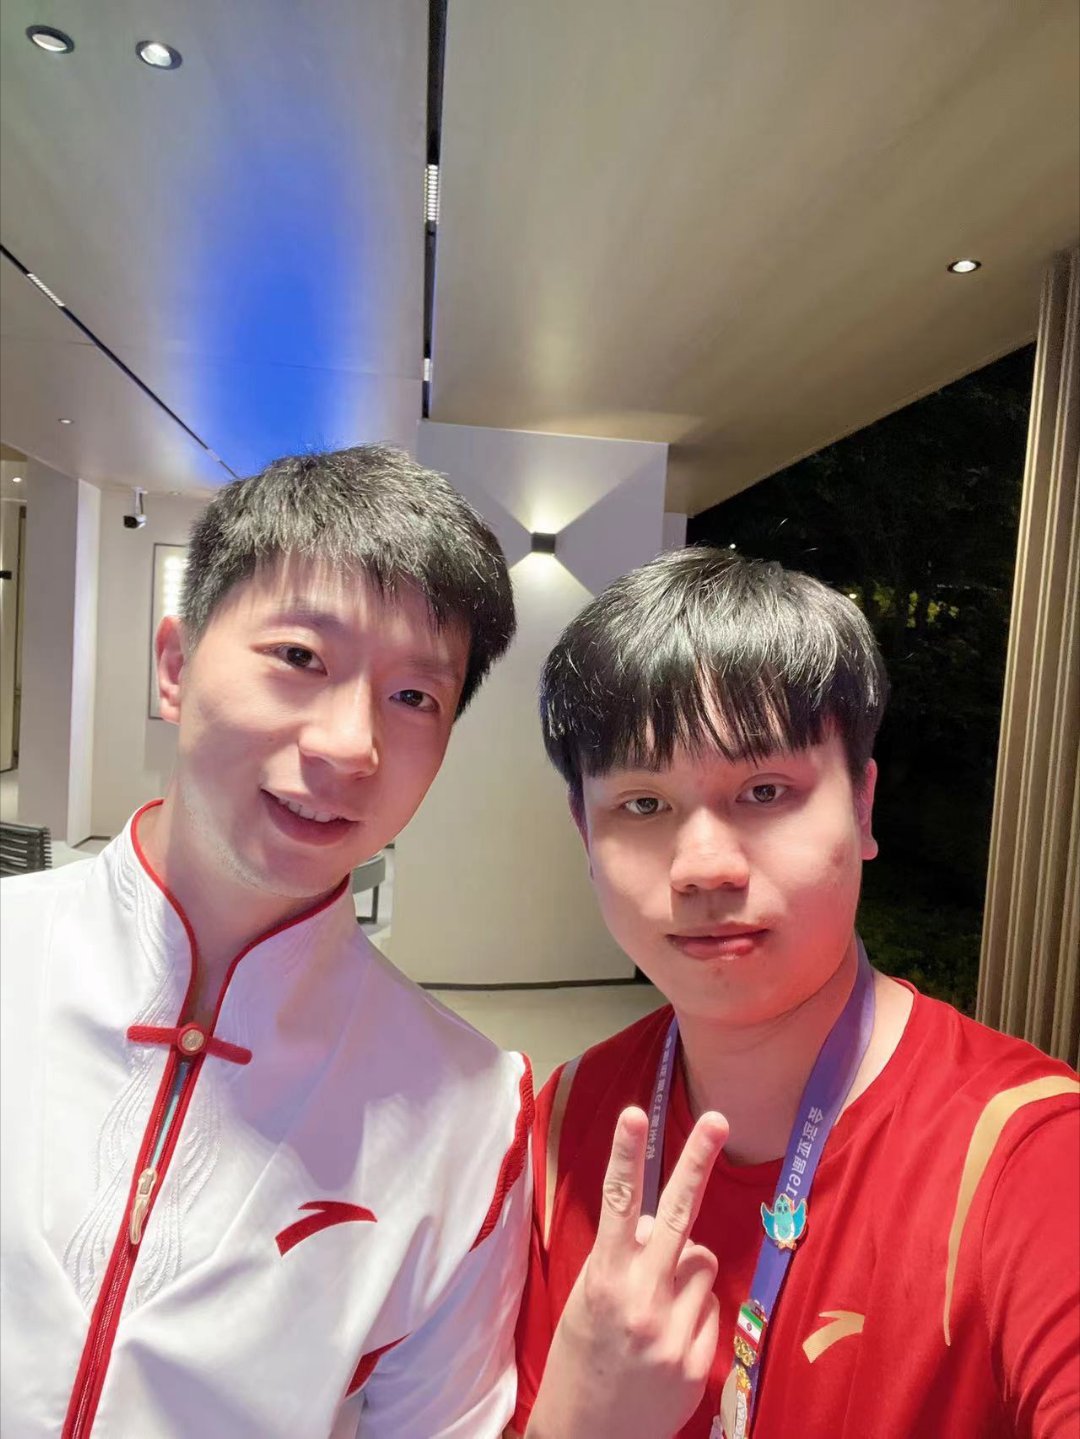 王者荣耀中国代表队选手与乒乓球运动员马龙见面并合照